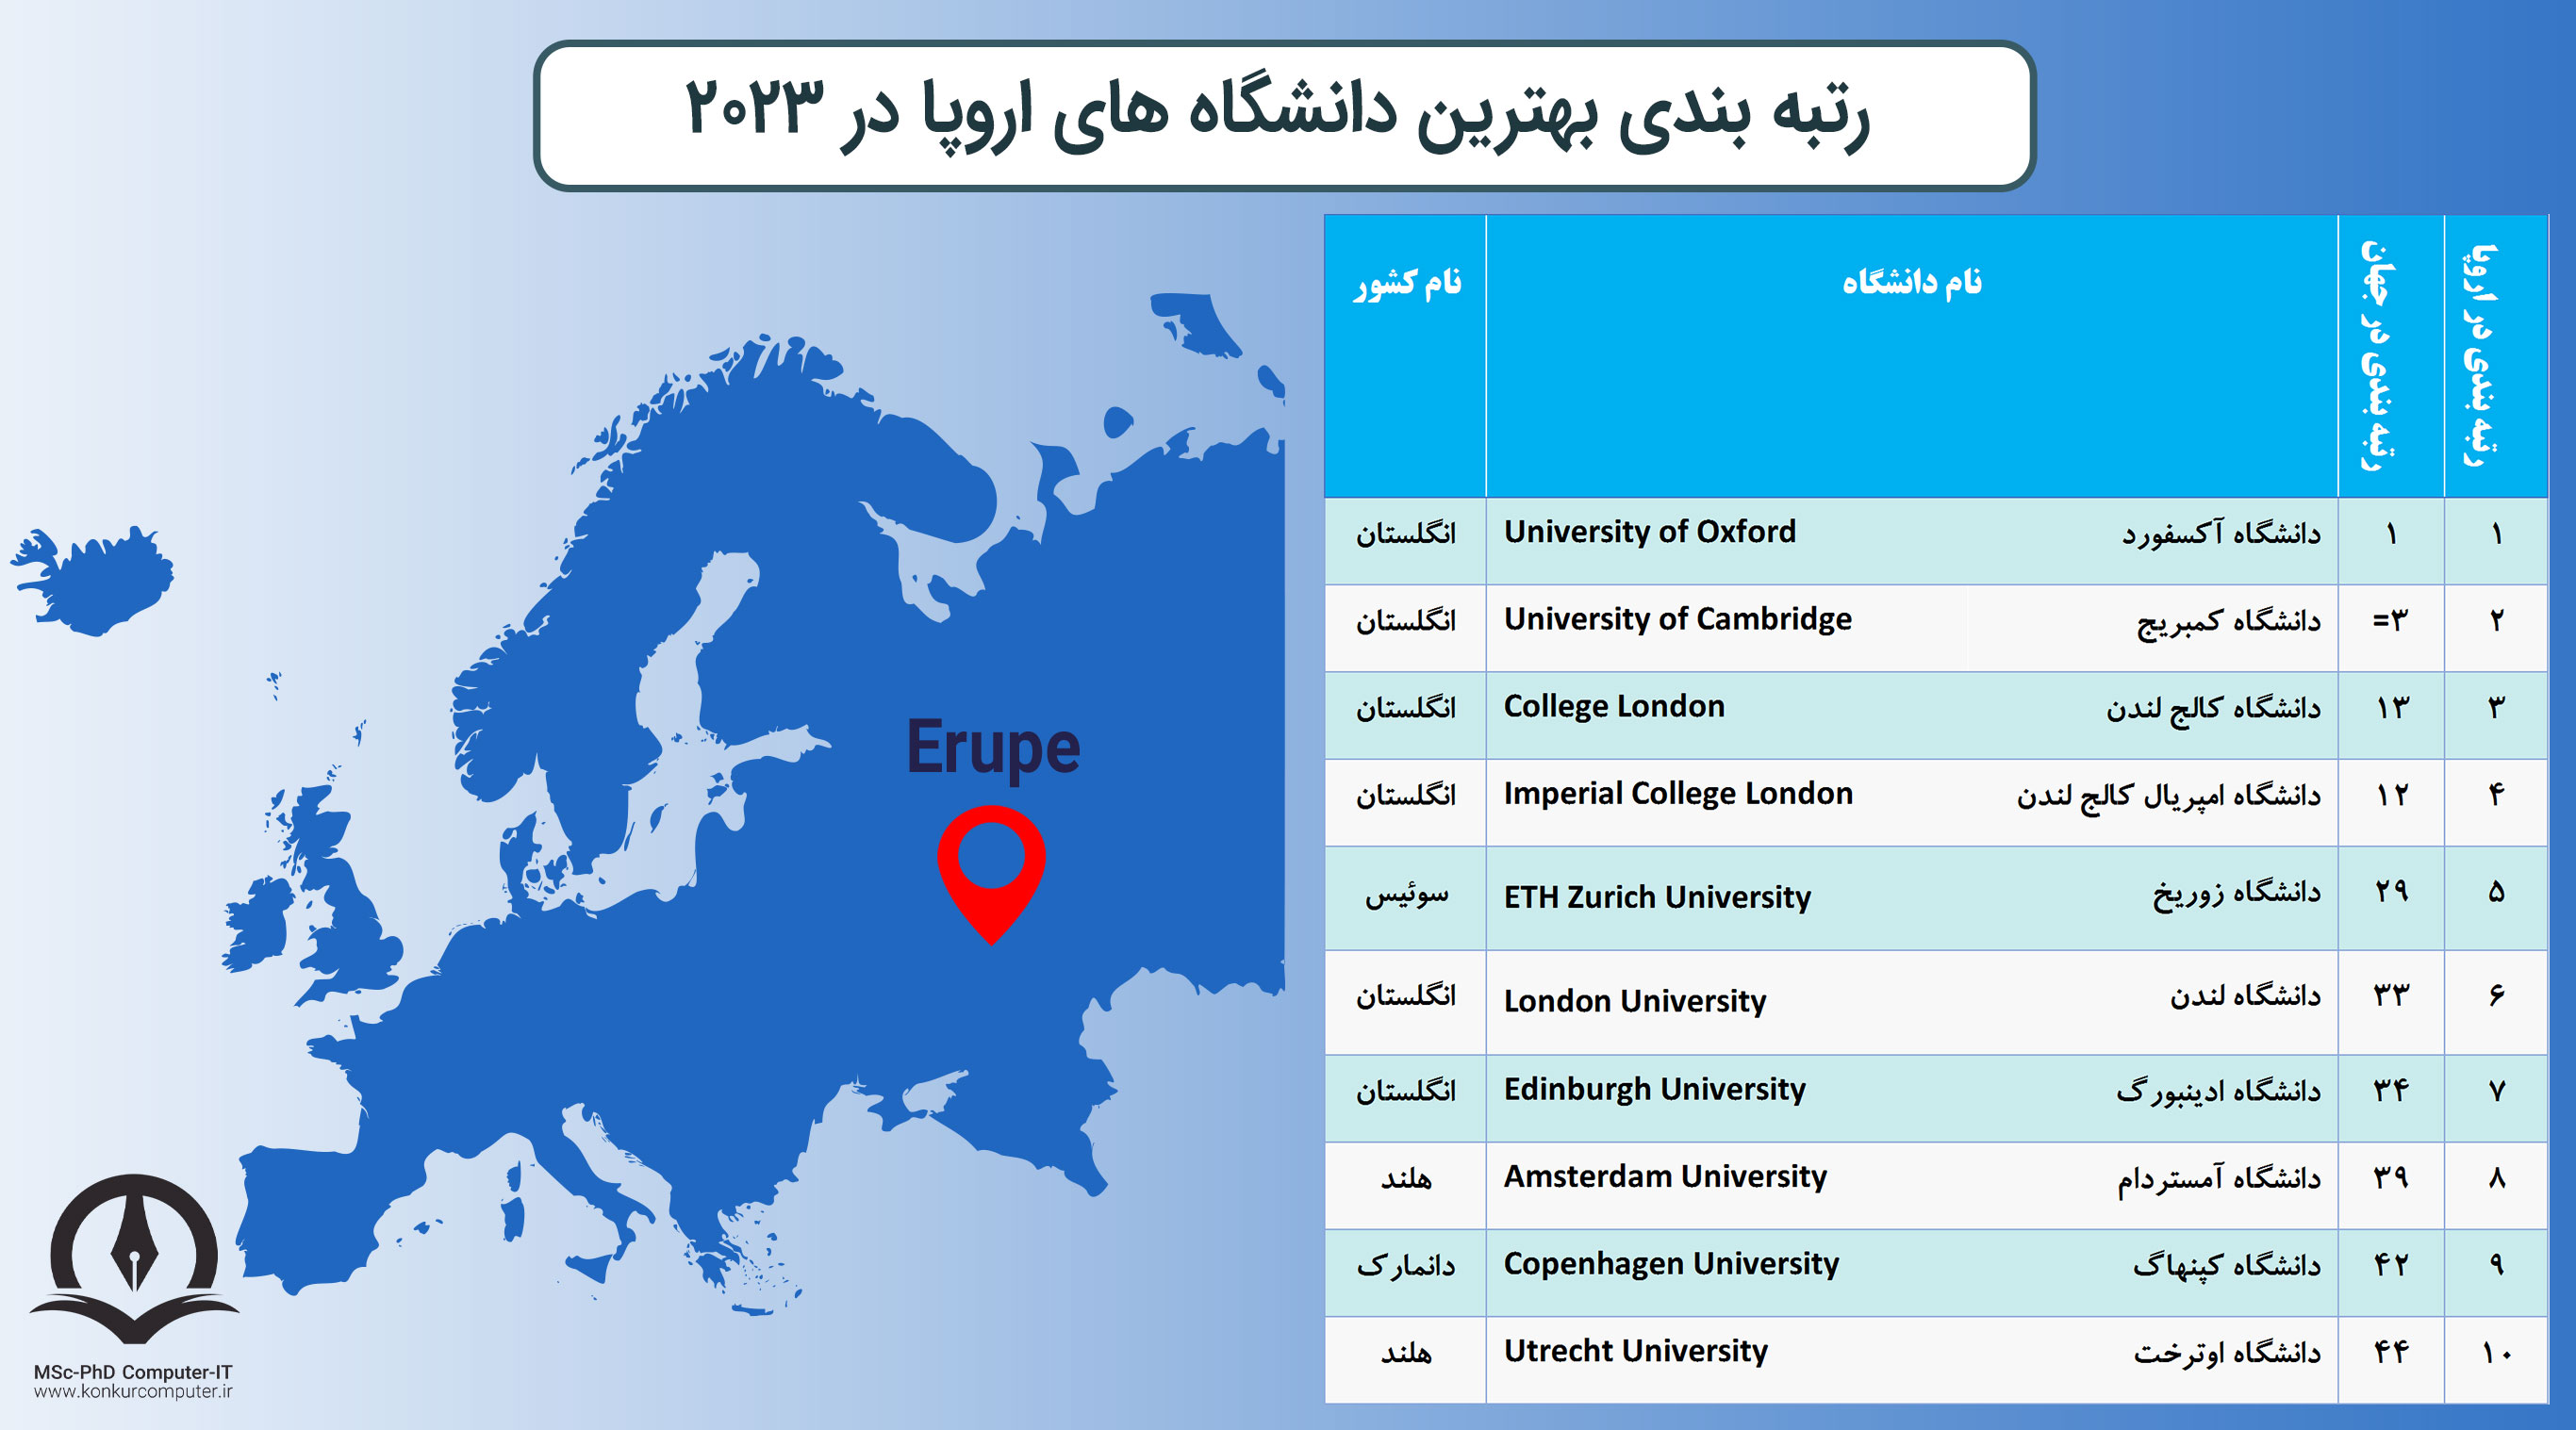 این تصویر جدول رتبه بندی بهترین دانشگاه های اروپا در سال 2023 را نشان می دهد. ستون های این جدول به ترتیب شامل عدد رتبه بندی، نام دانشگاه به فارسی و انگلیسی و نام کشوری که دانشگاه در آن قرار دارد آورده شده است